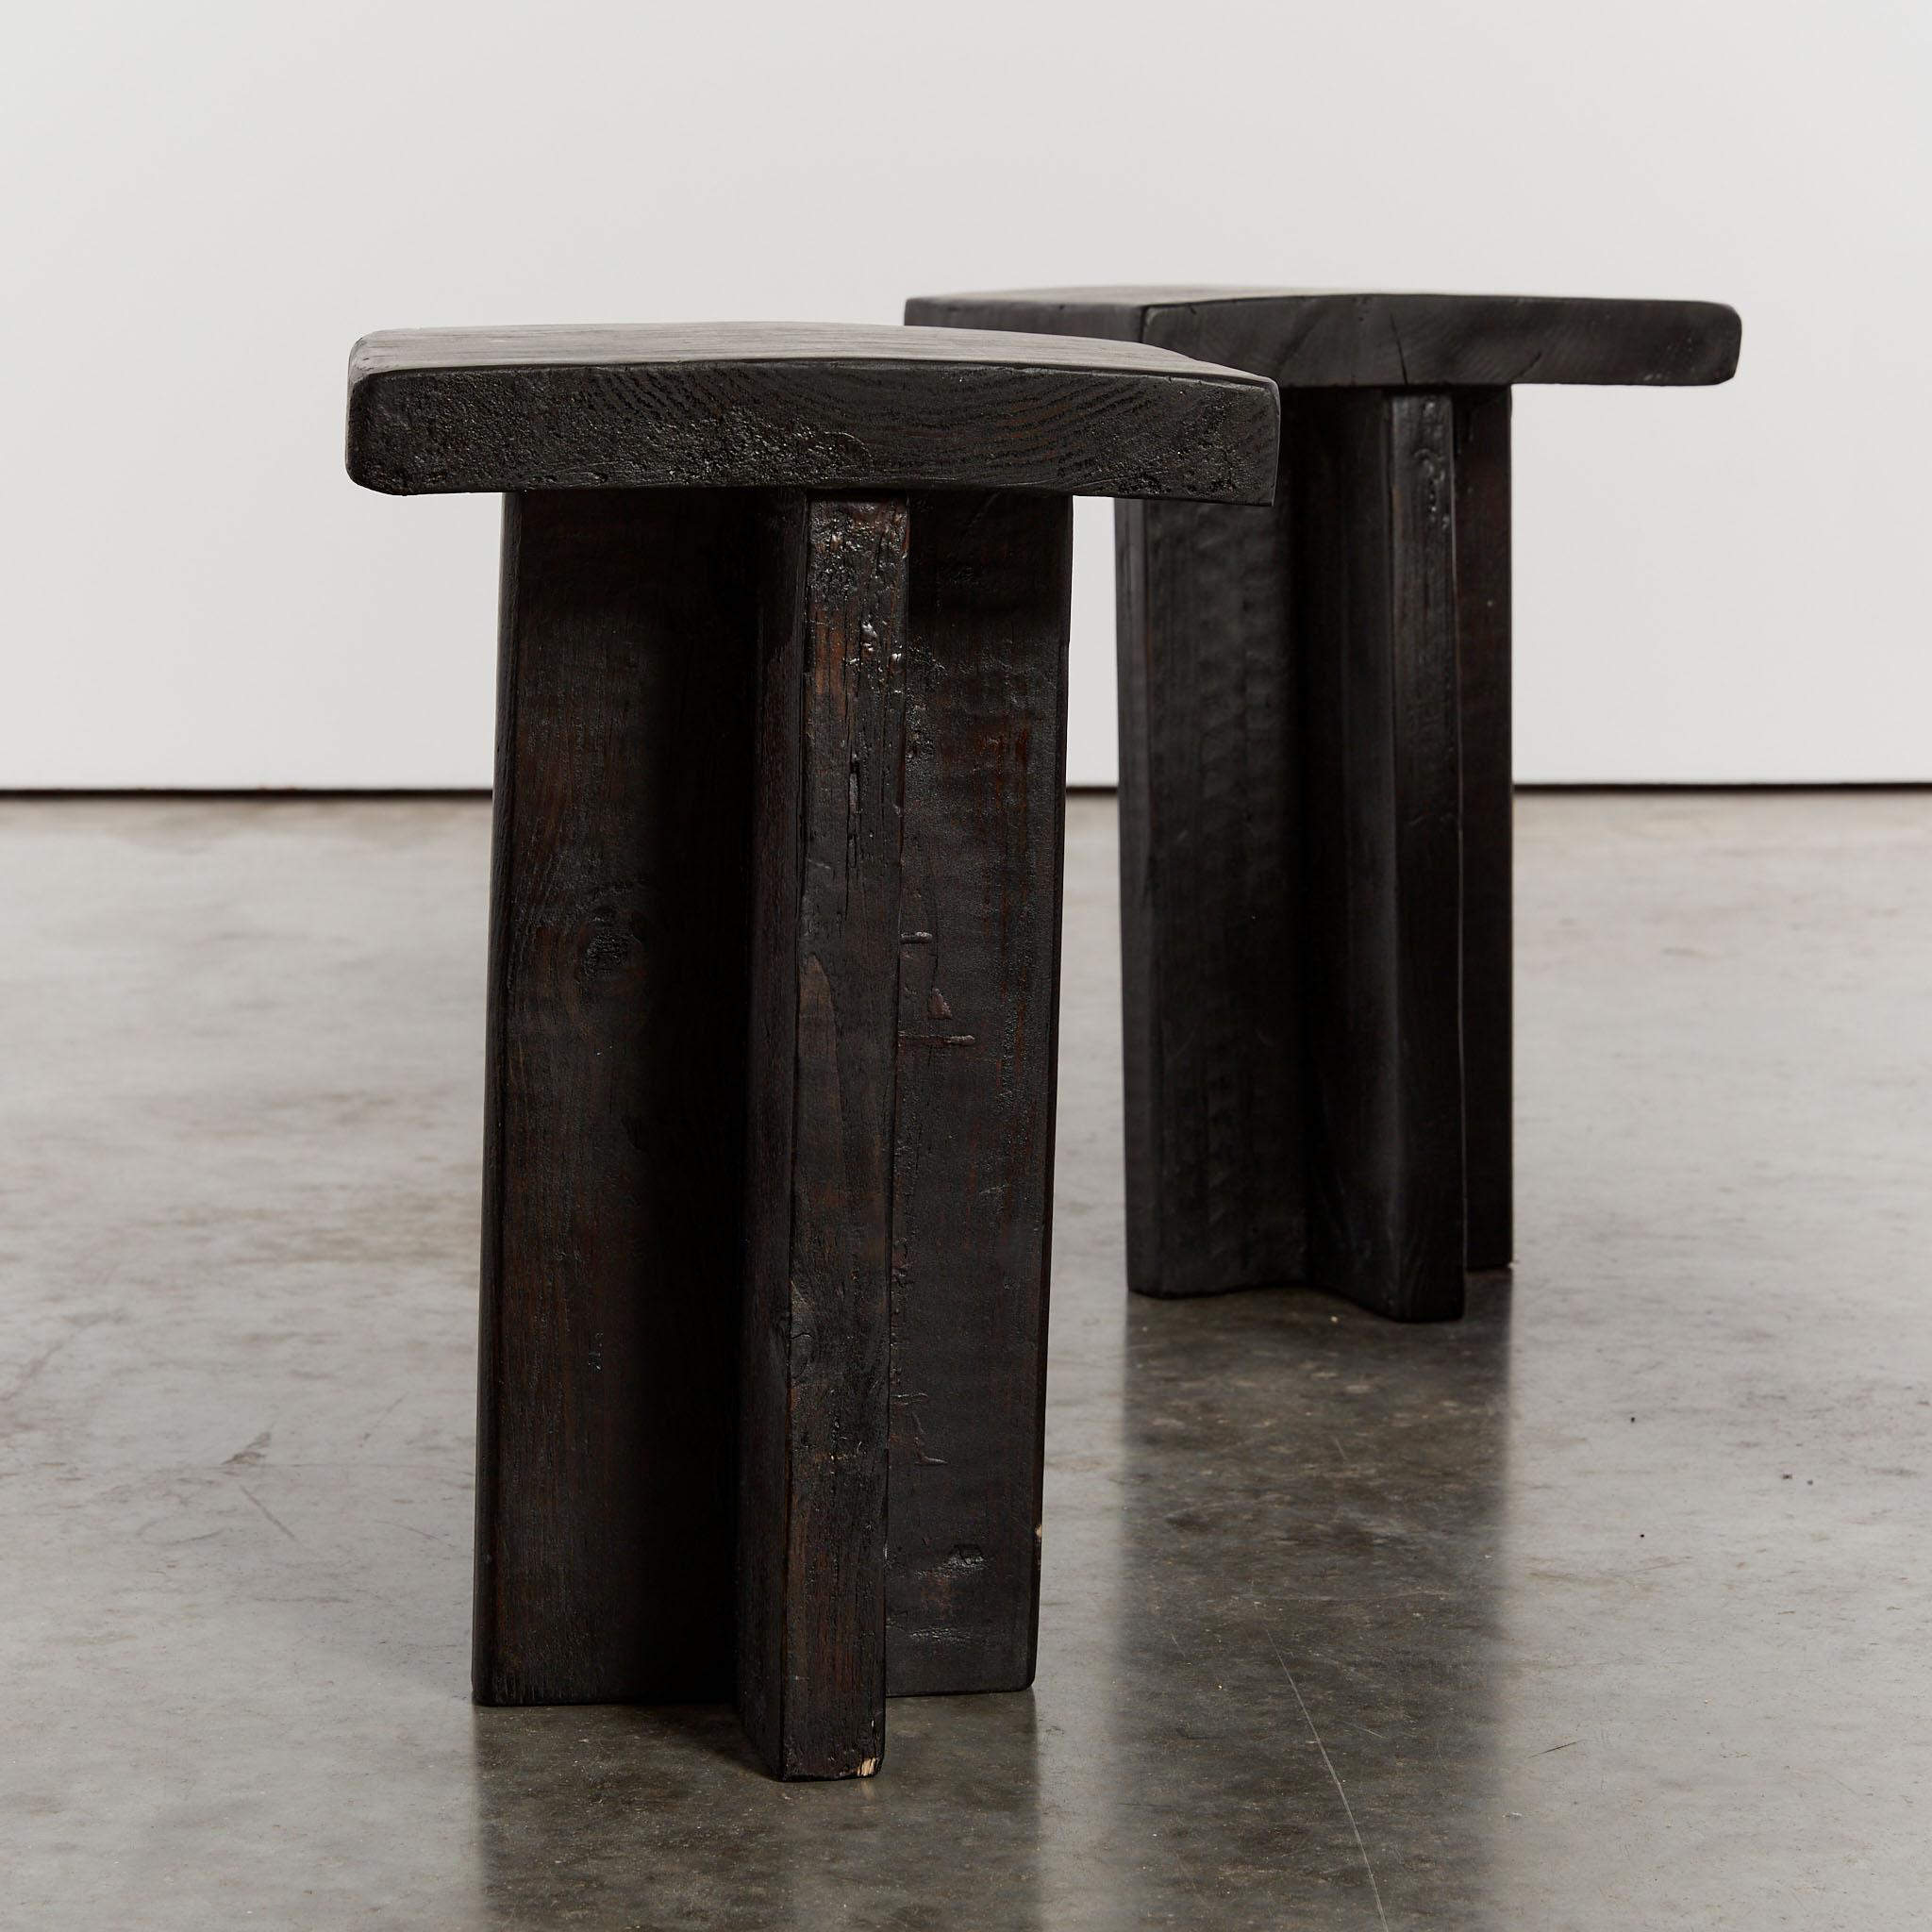 Wood Wabi sabi T shaped ebonised stools or side tables